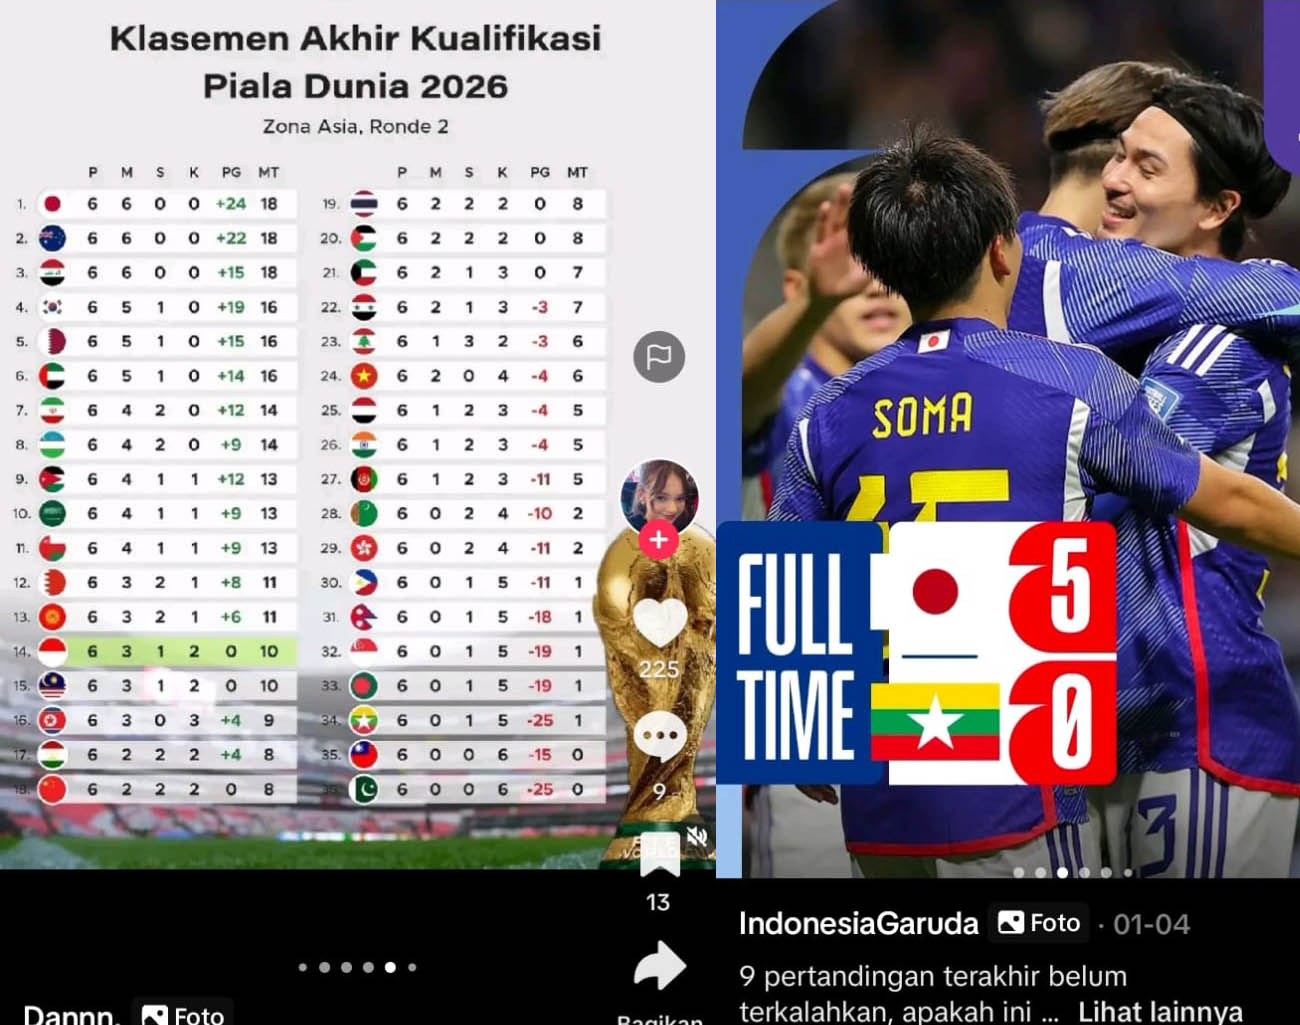 Jepang Pimpin Klasemen Juara Grup Ronde 2, Kualifikasi Piala Dunia 2026, Zona Asia, Indonesia Peringkat 14